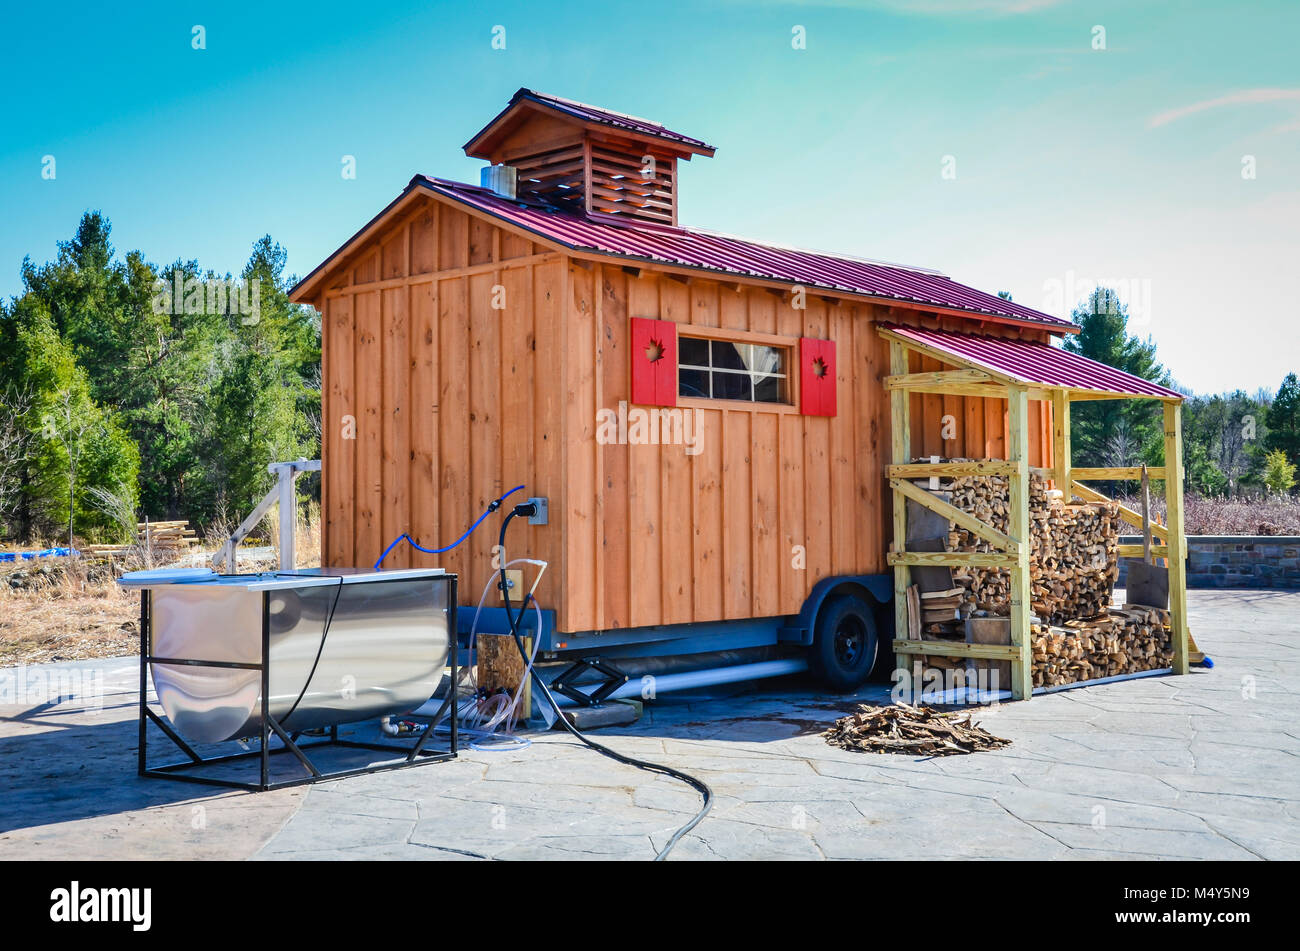 Zucchero Mobile shack su ruote con red maple leaf persiane e un acciaio inossidabile evaporatore insieme all'esterno. Foto Stock